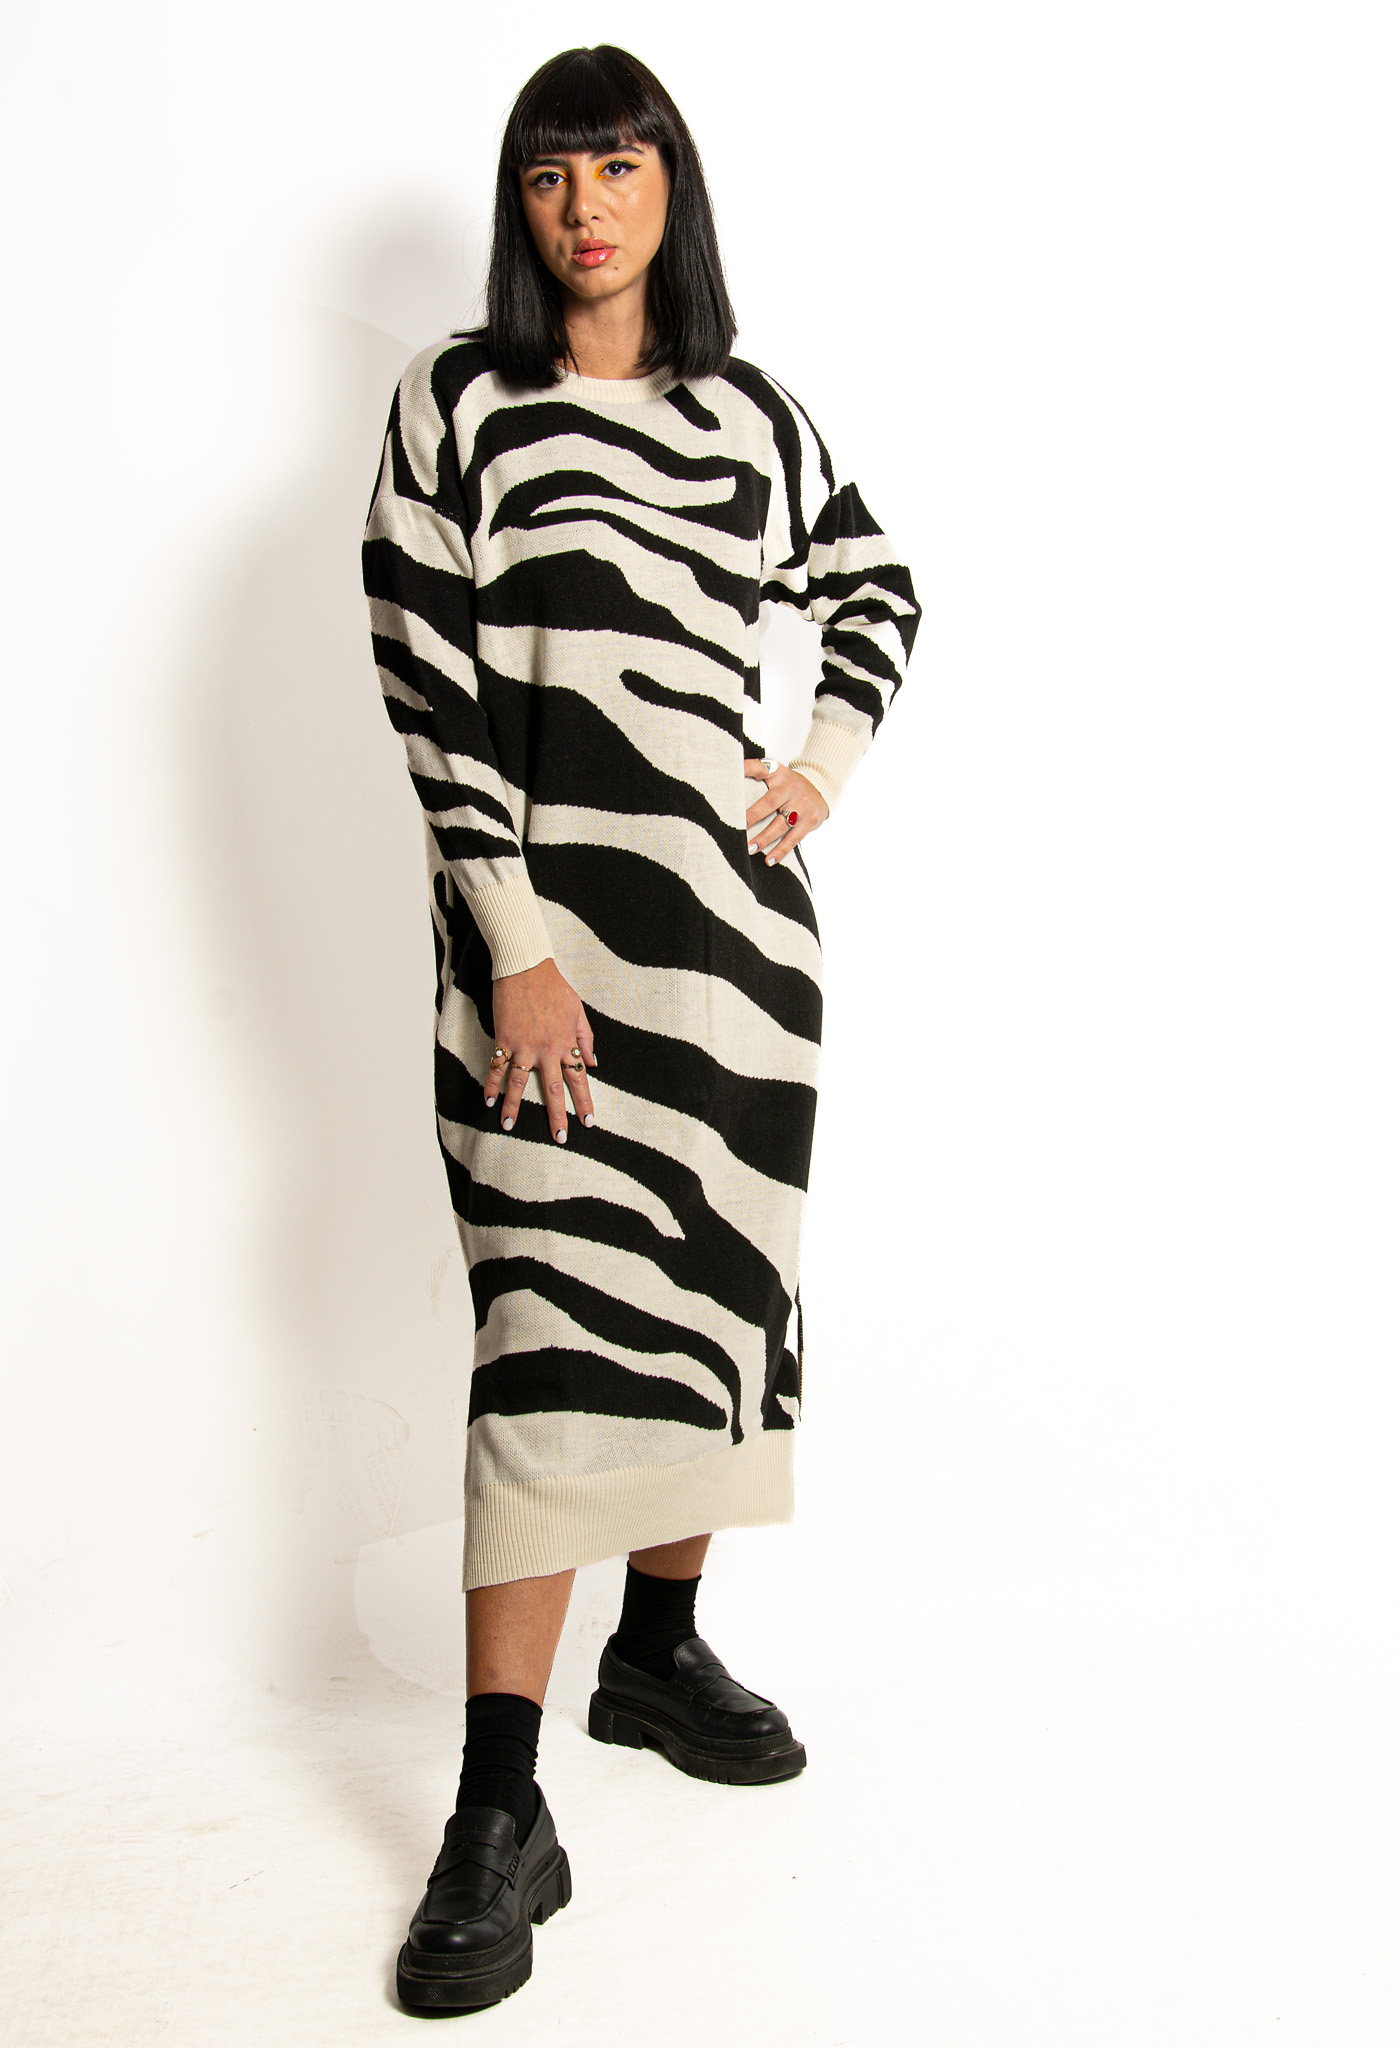 Φόρεμα Πλεκτό Zebra 'Ασπρο-Μαύρο – EllenBoutique